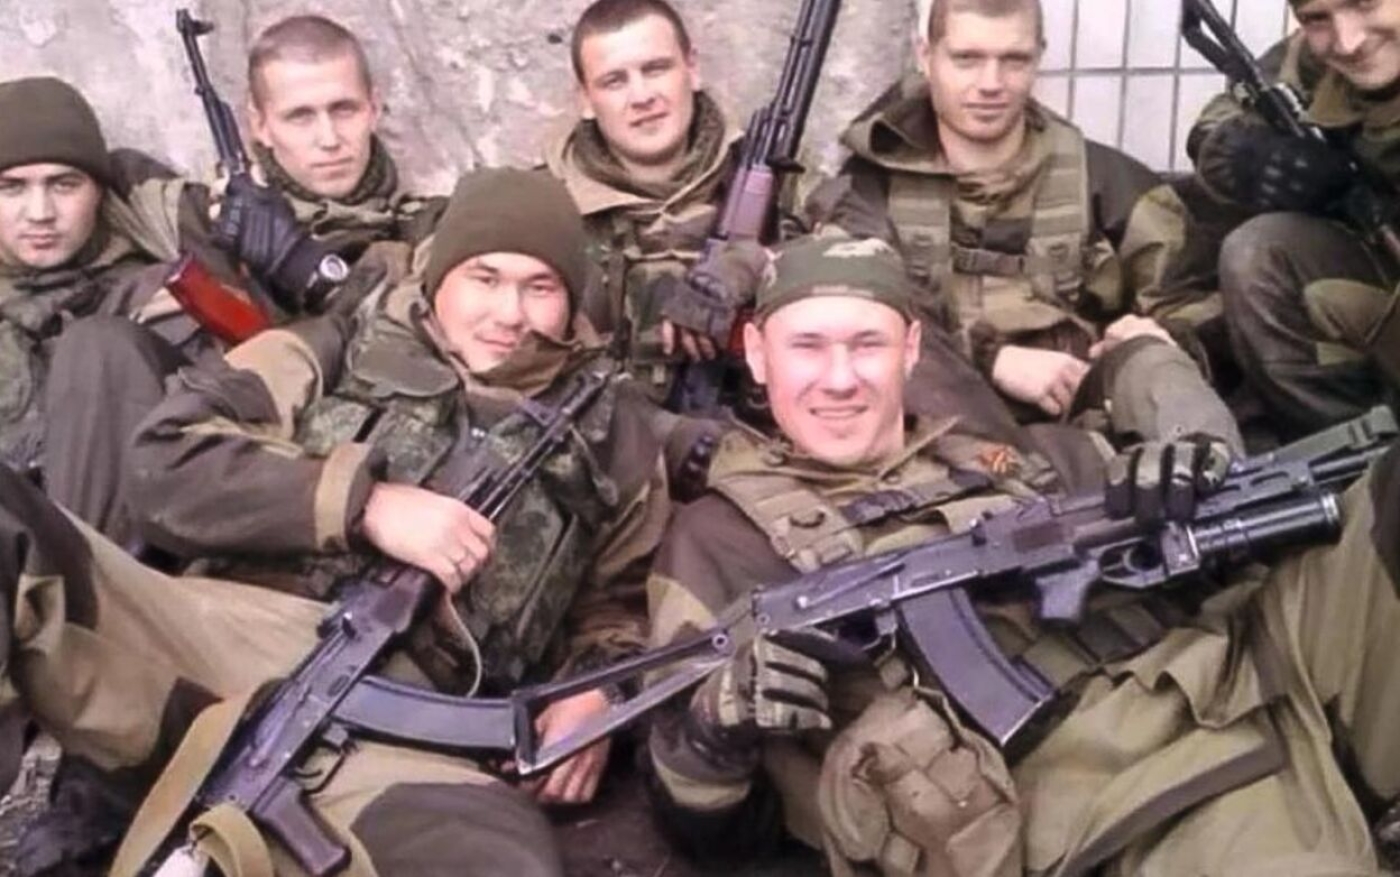 Cette photo partagée sur les réseaux sociaux montre des mercenaires russes du Wagner Group en Syrie (Twitter)